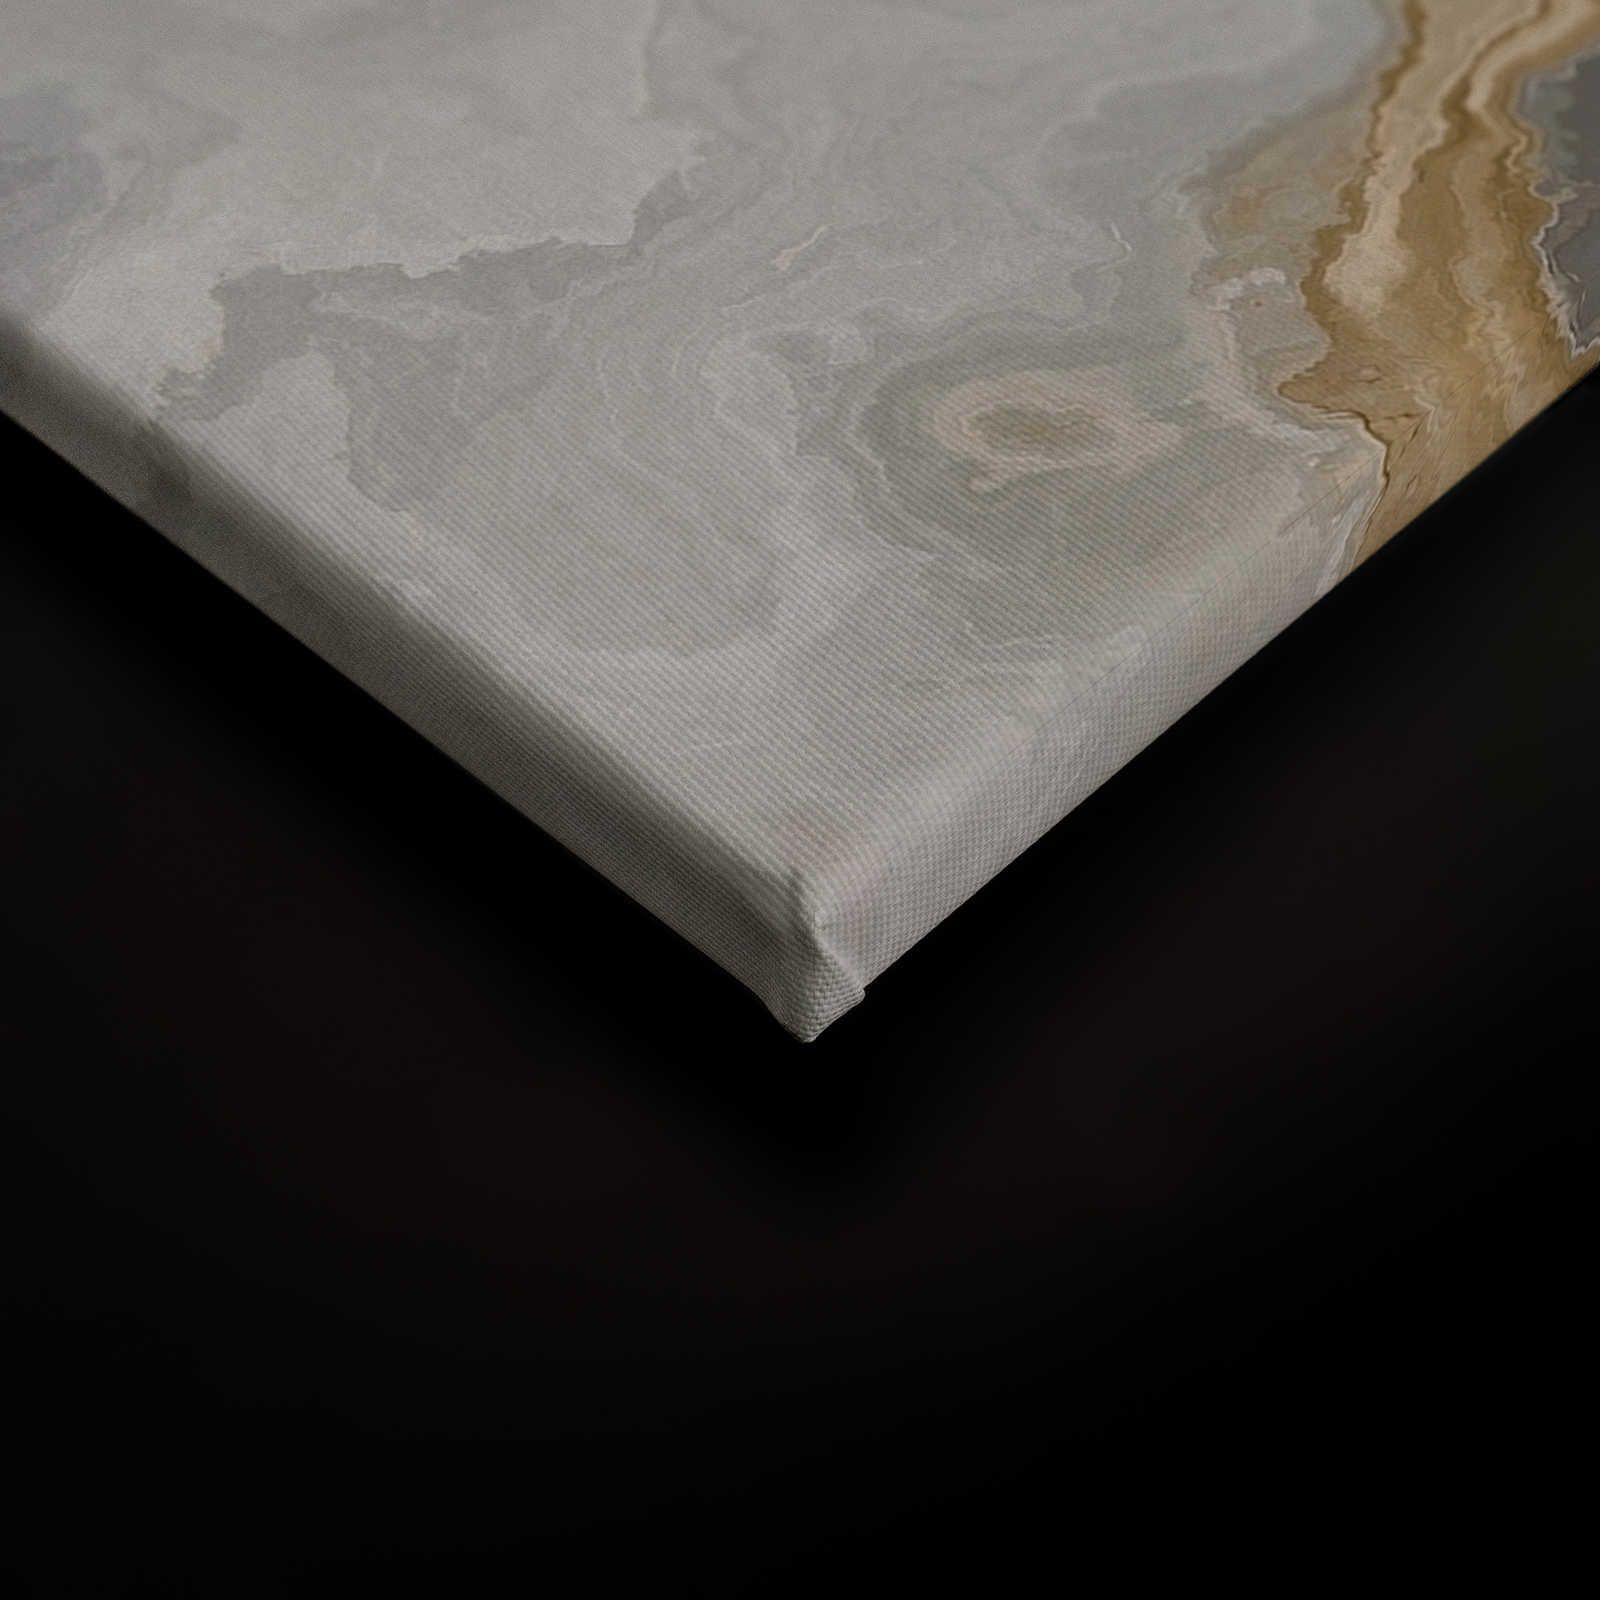             Lienzo pintura aspecto piedra cuarzo con jaspeado - 1,20 m x 0,80 m
        